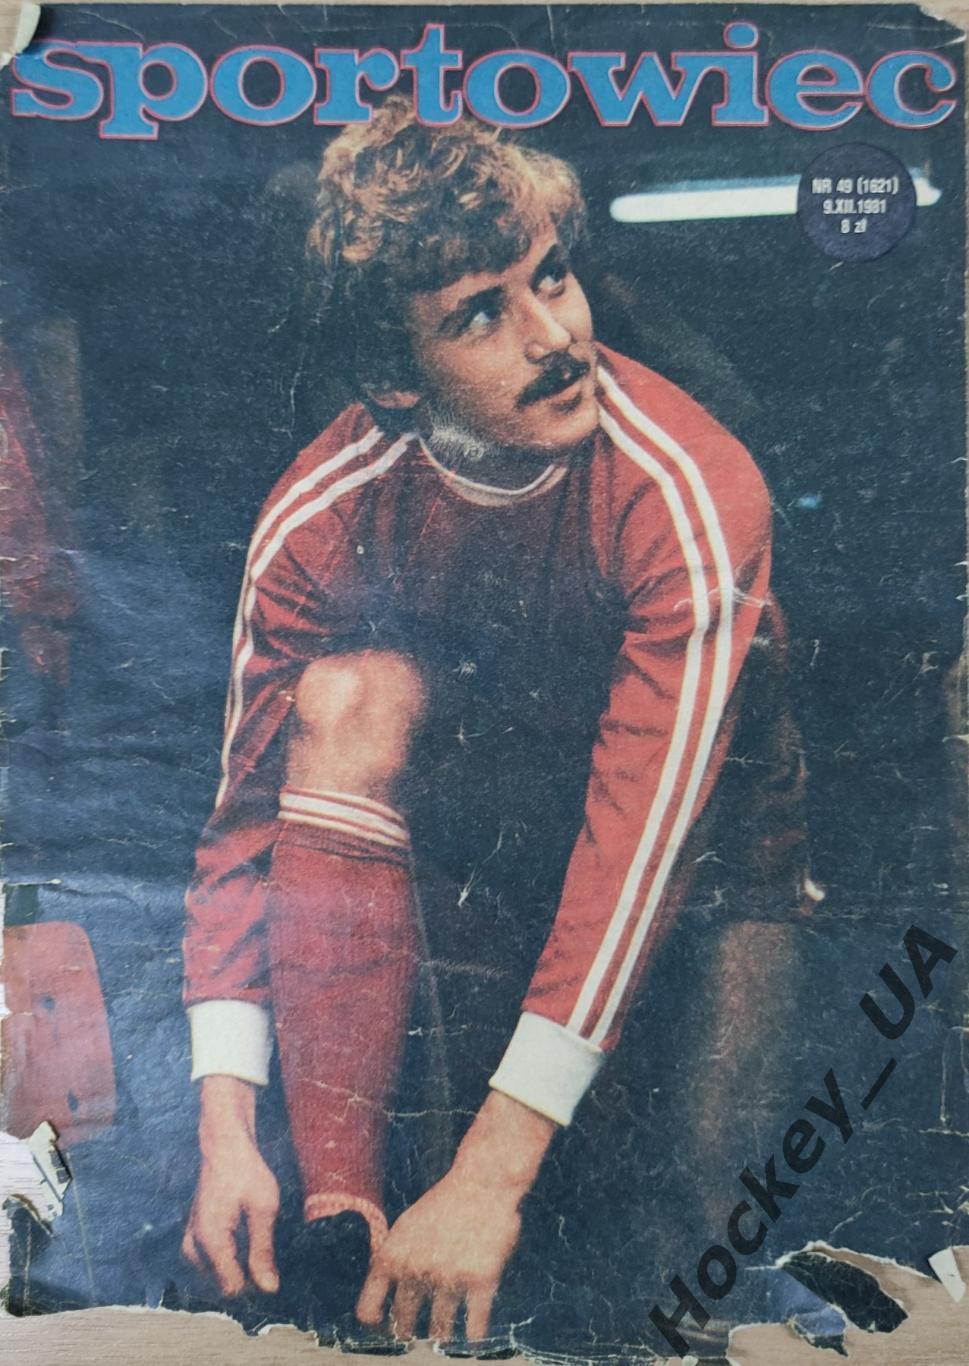 Журнал Sportowiec №49 9.12.1981 г.